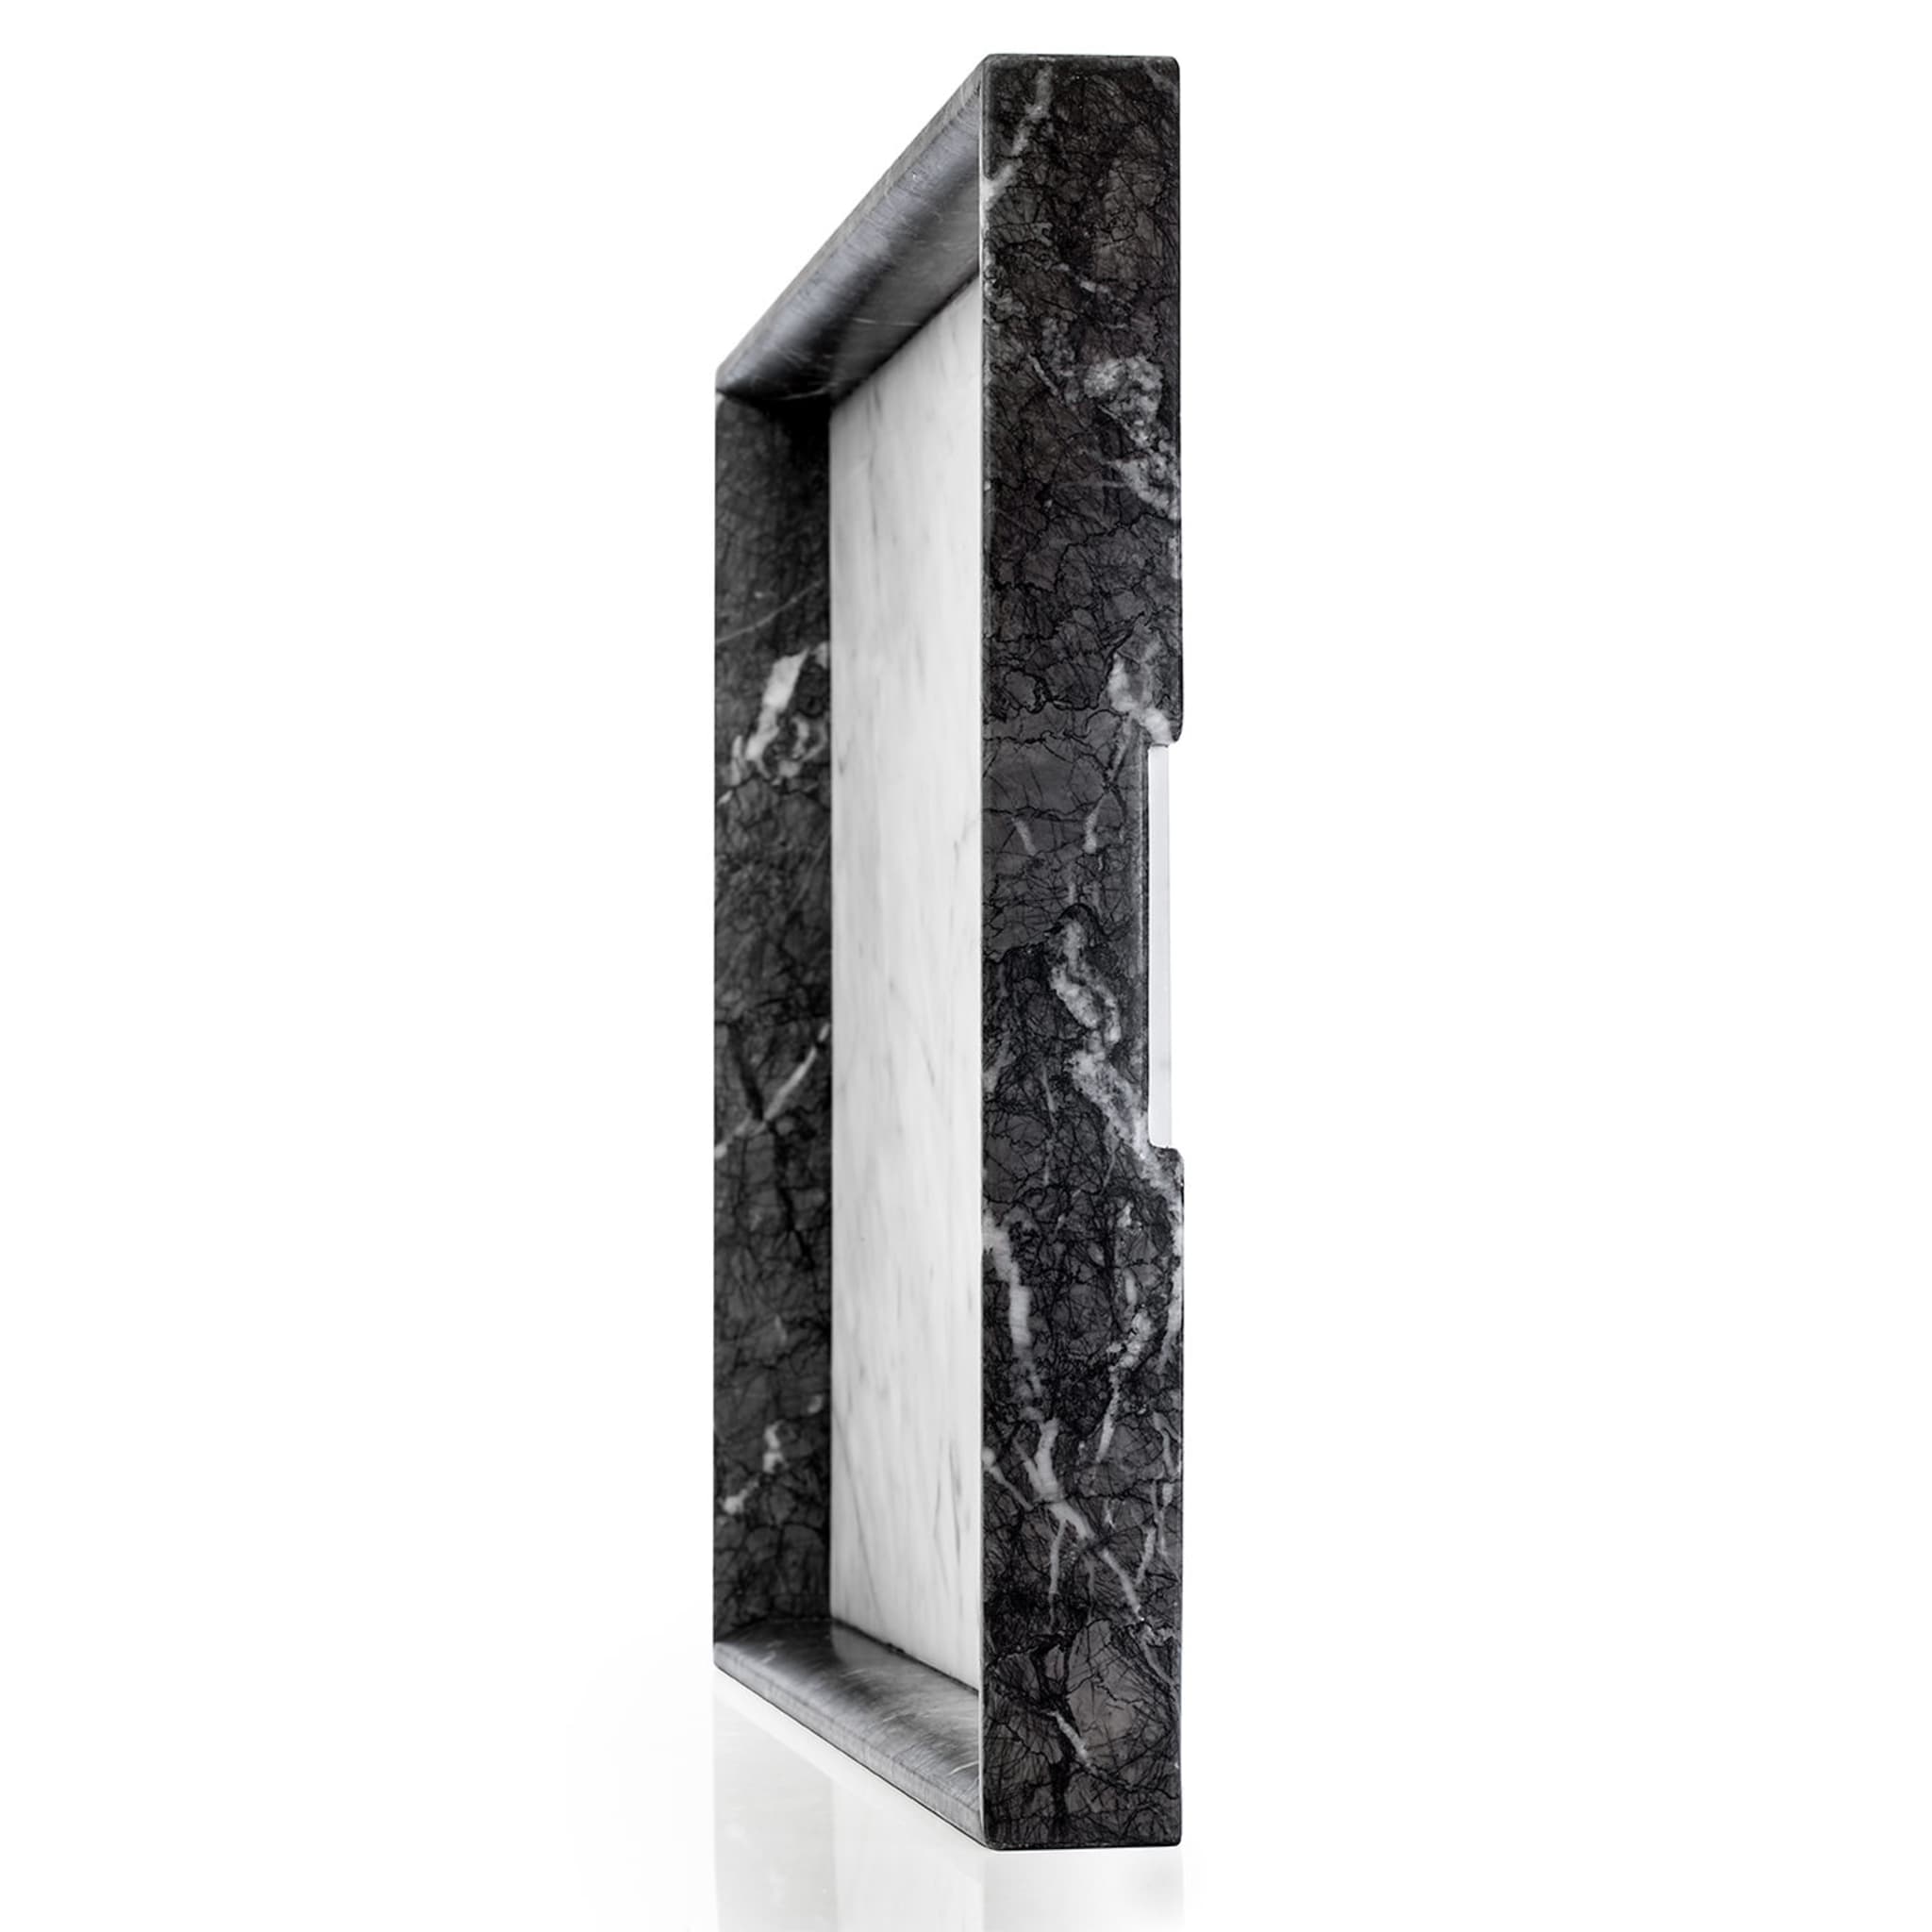 Convivio Maxi Solid Tray in Grey Carnico and White Carrara Marbles - Alternative view 1